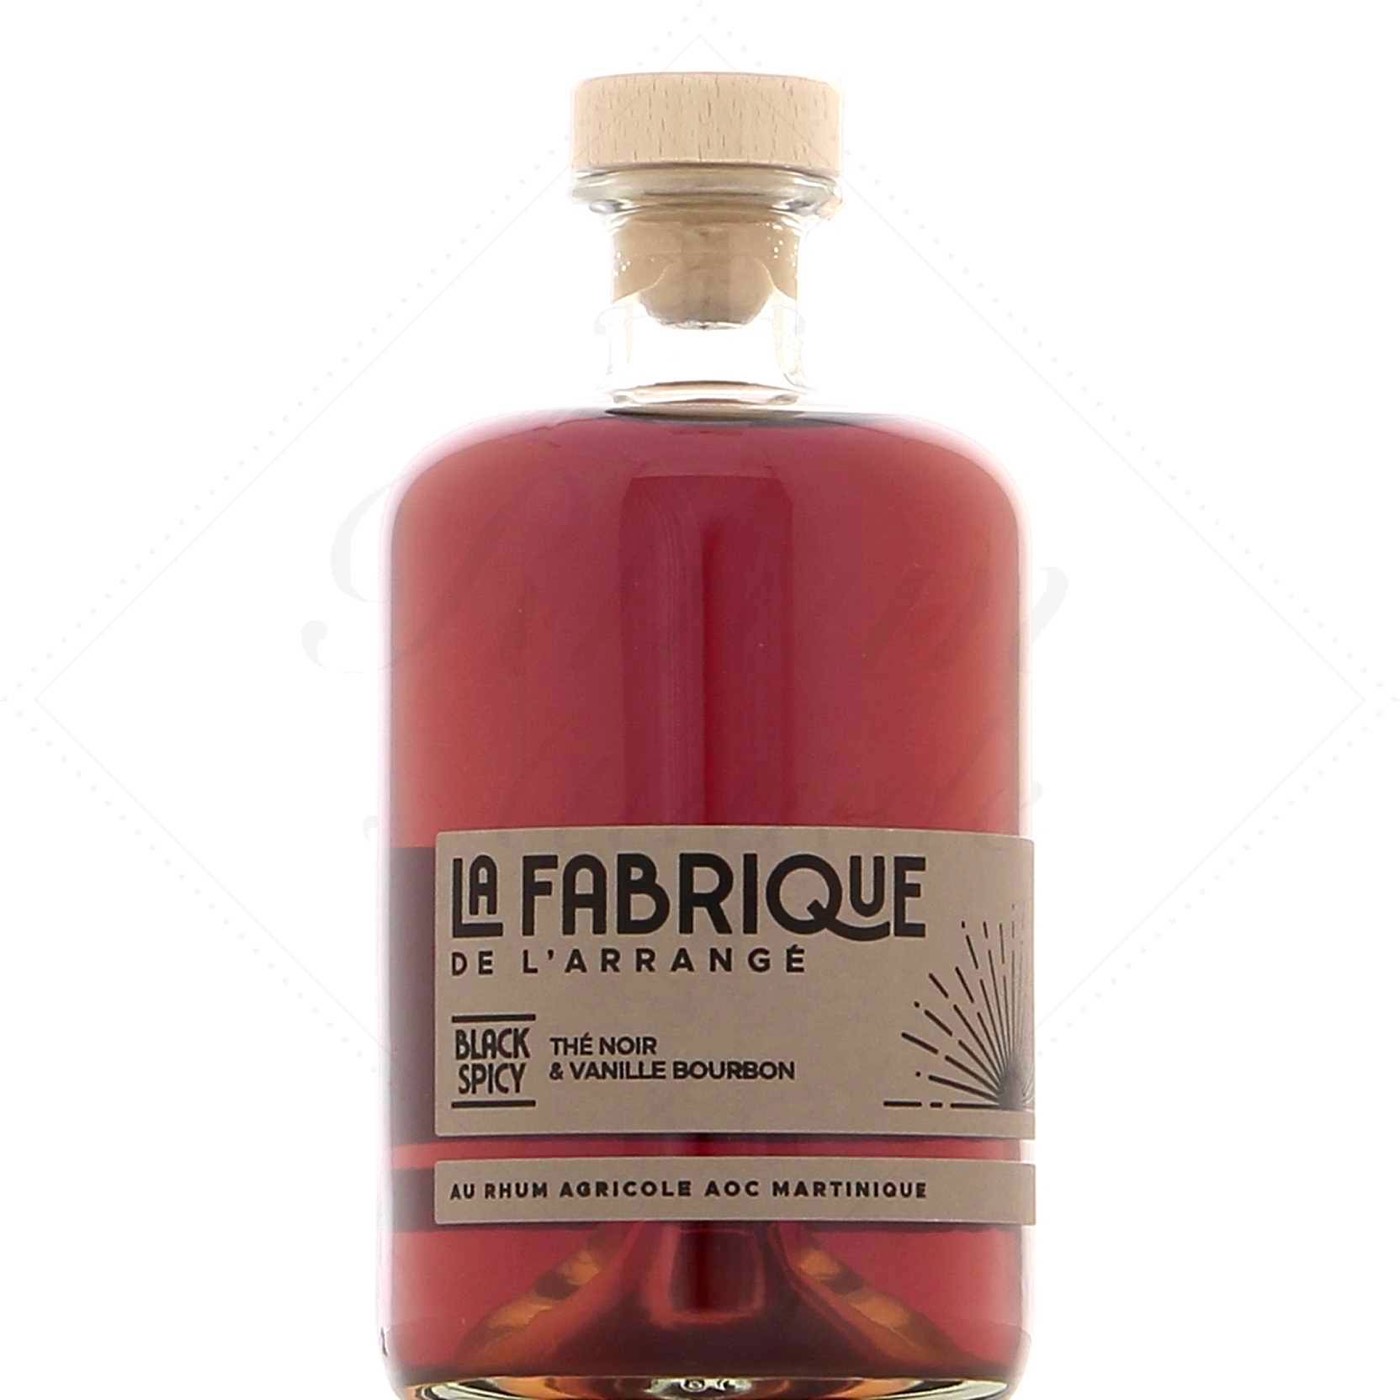 Bottle image of La Fabrique de l’Arrangé Balck Spicy Thé noir Vanille Bourbon